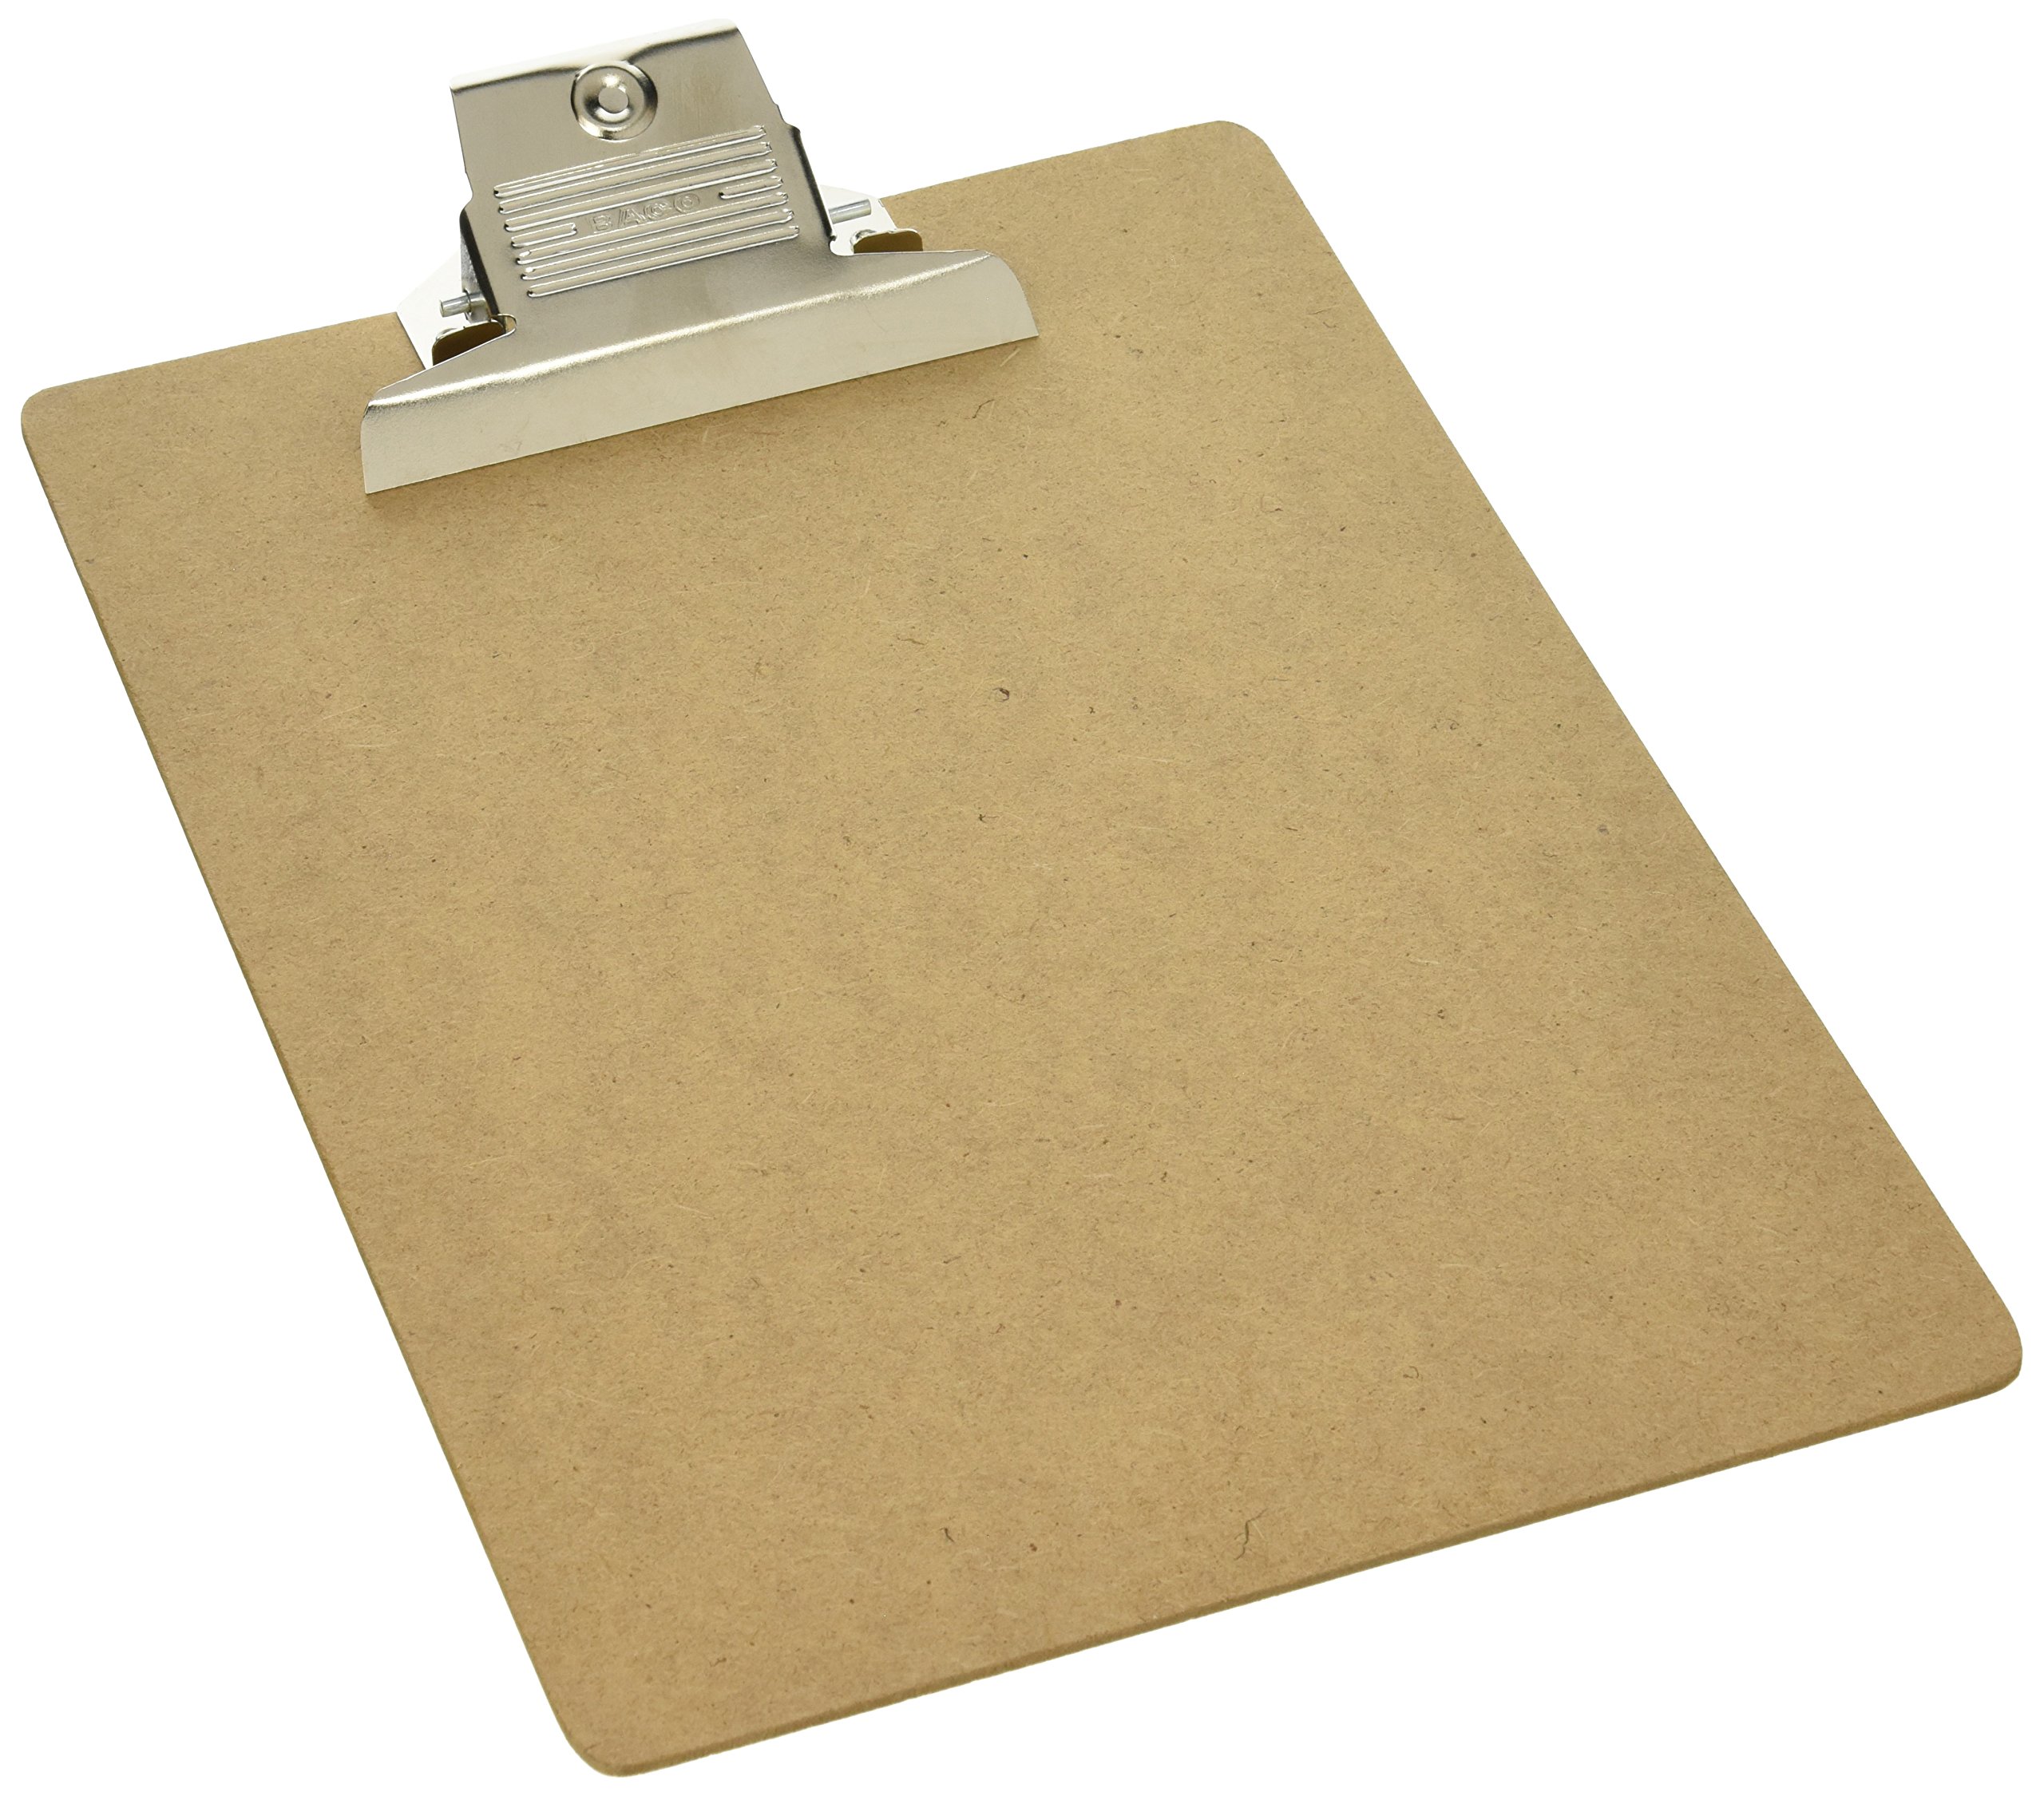 Tabla Baco fibracel carta broche metálic Tamaño carta de 23 x 32 cm. fabricadas con base de mdf de 2.5 mm de espesor y broche en acabado niquelado                                                                                                                                                       o, tamaño carta, 1 pieza                 - PTTBA0009